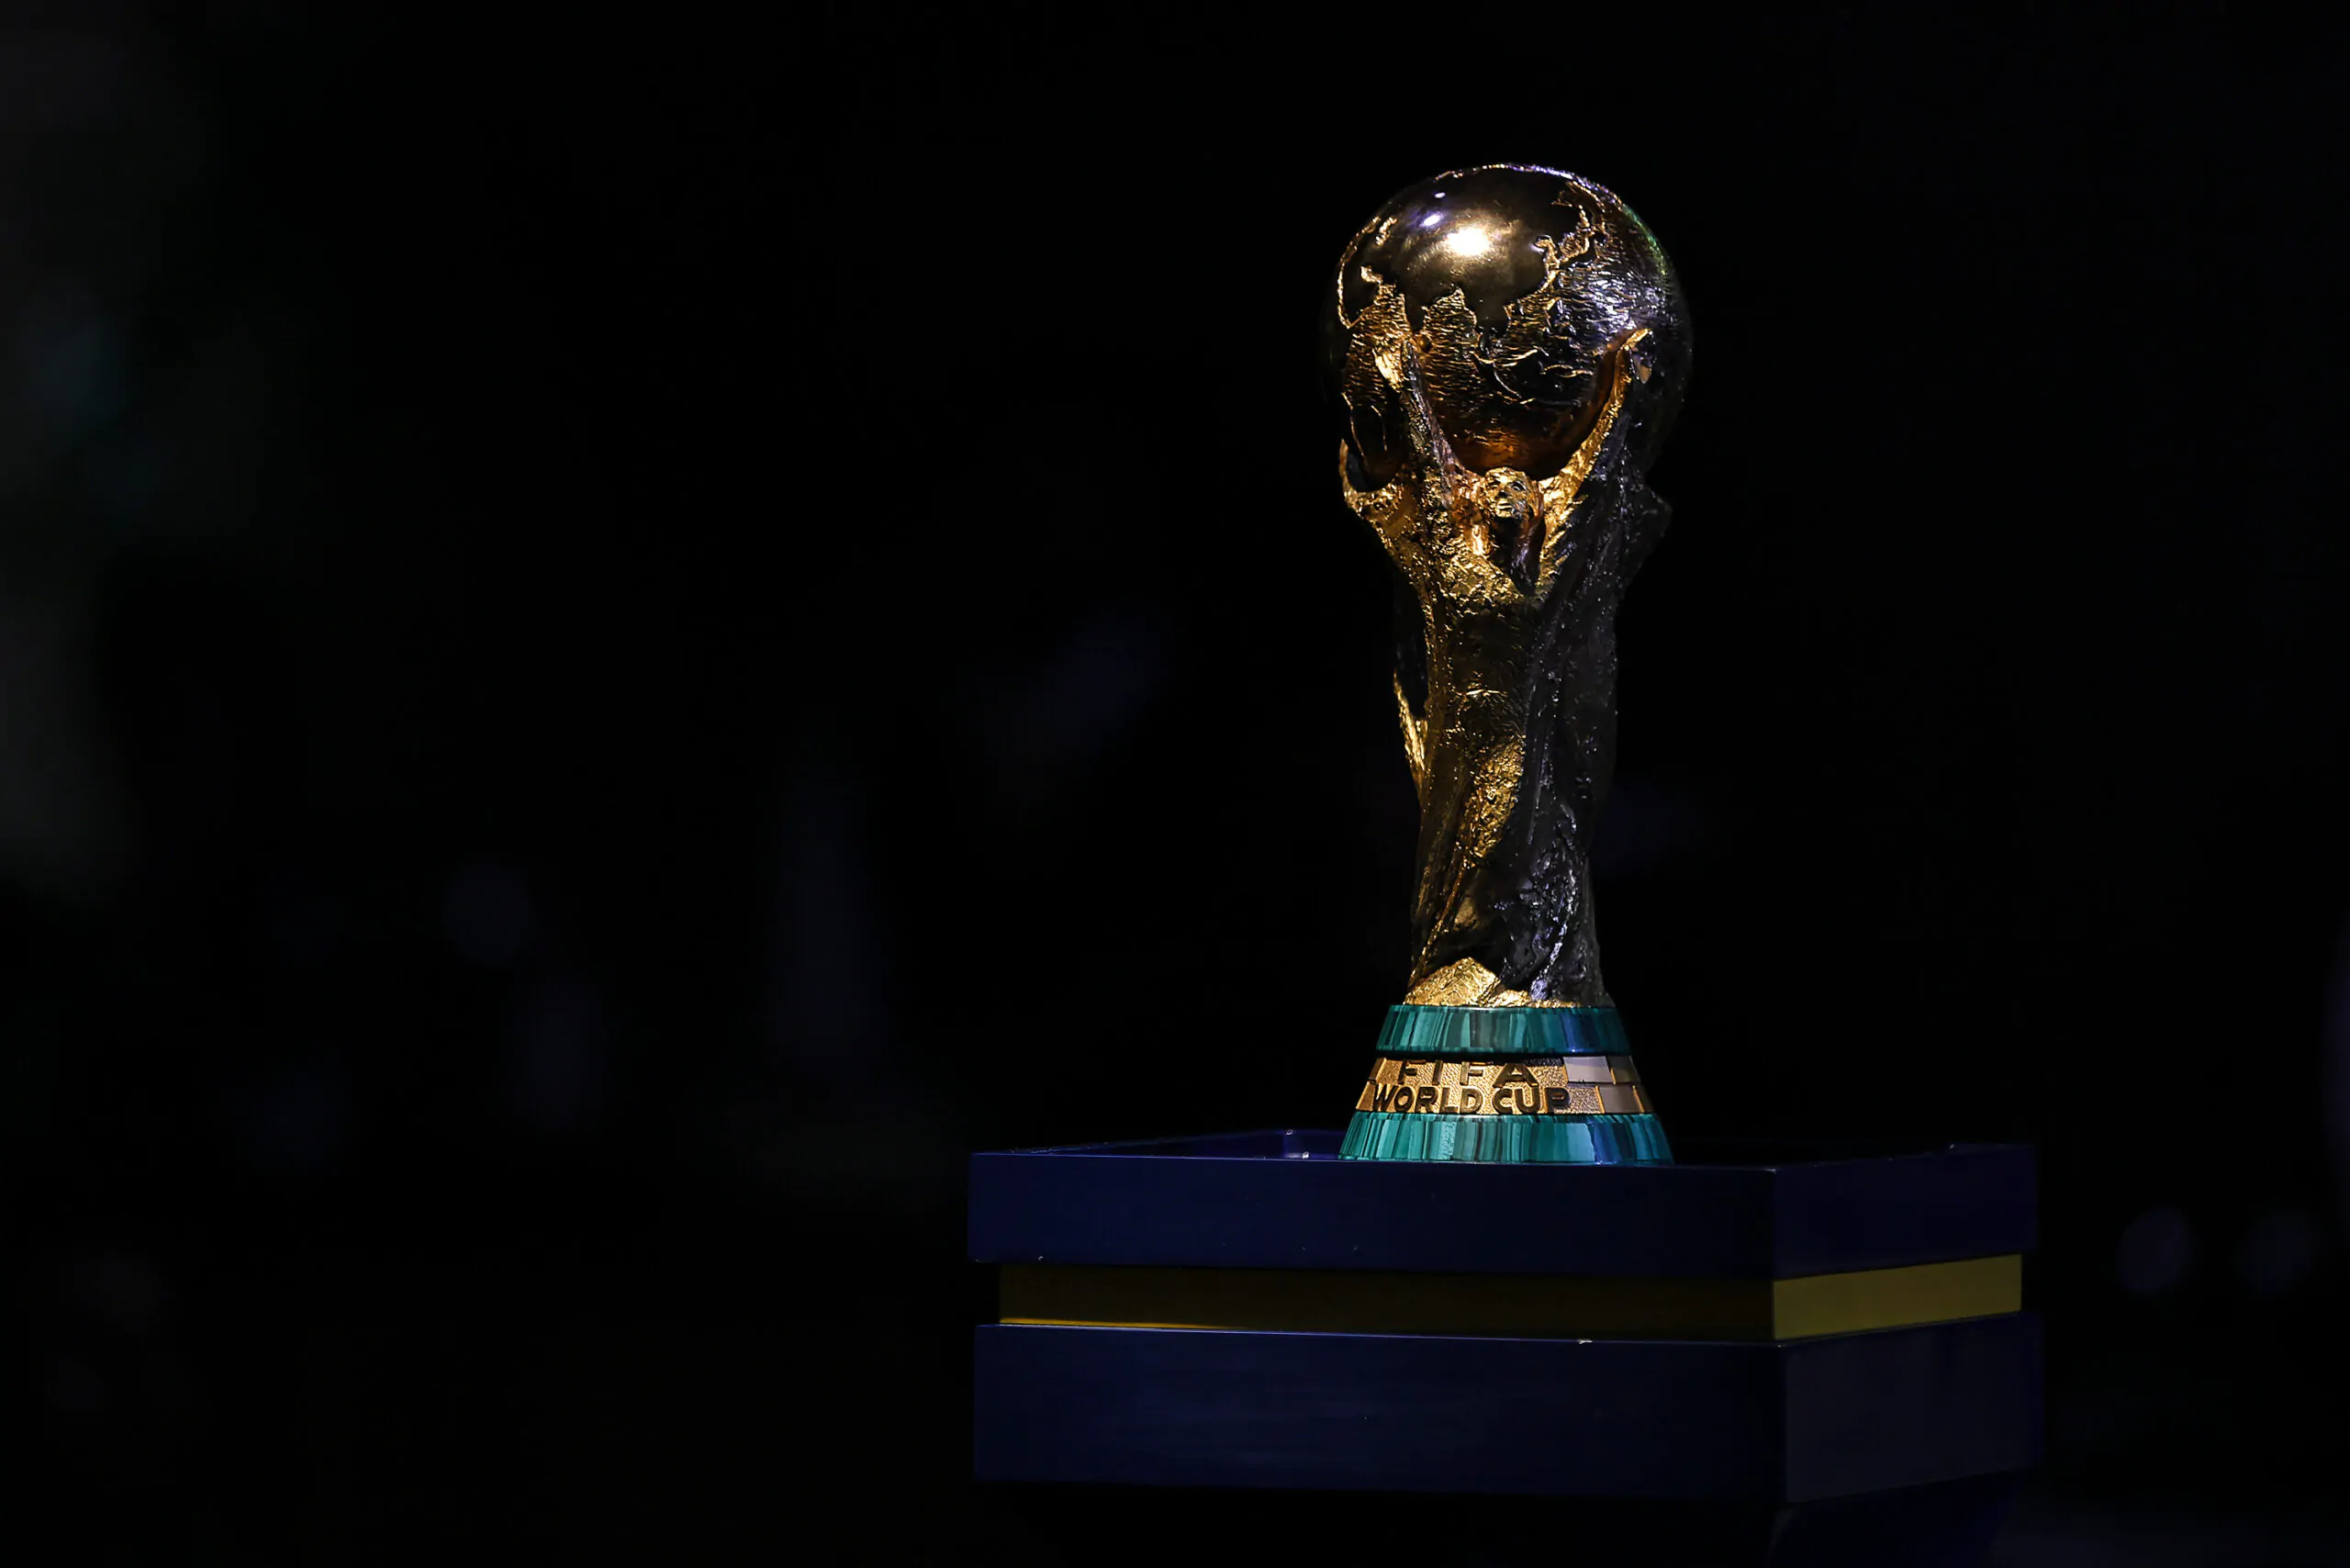 Mondiali 2030, una candidata a sorpresa insieme a Spagna e Portogallo!